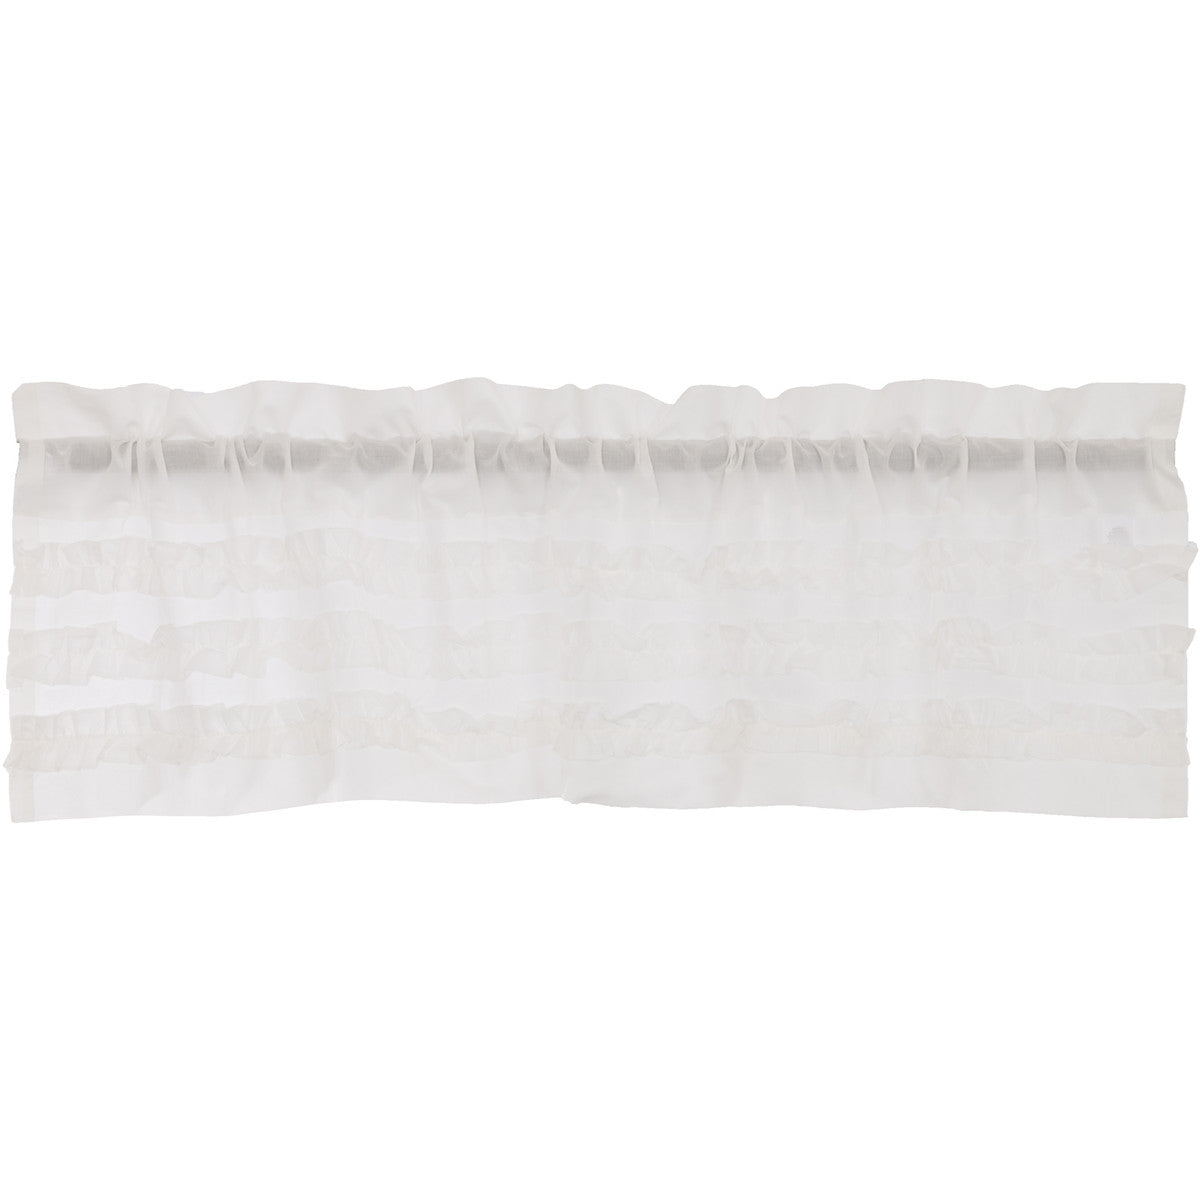 White Ruffled Sheer Petticoat Valance 16x60